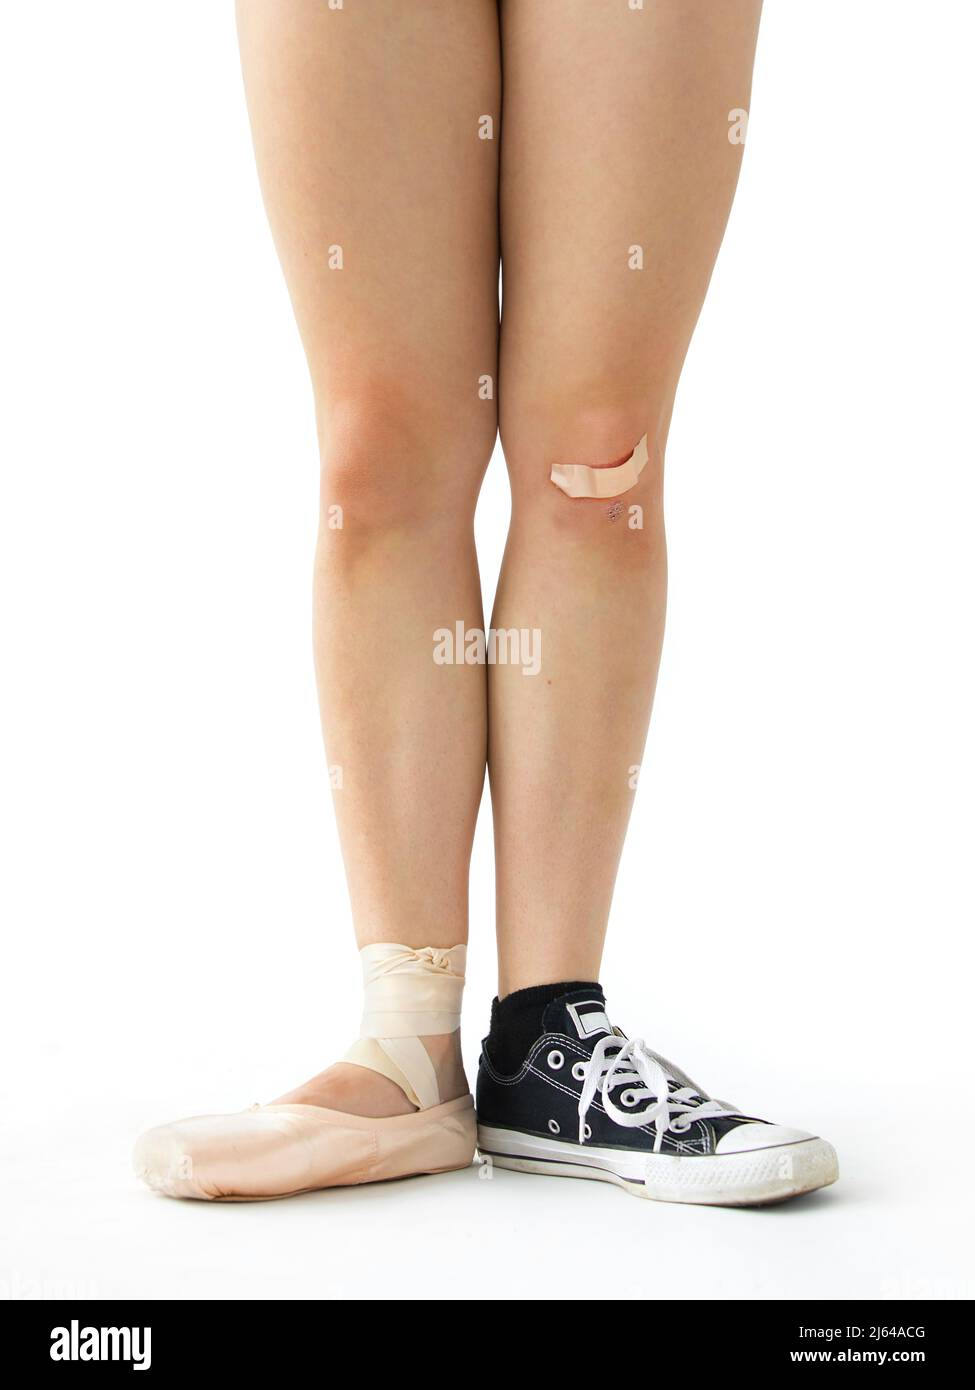 Die Beine einer jungen Frau mit einem Fuß, der einen Ballettschuh trägt und der andere einen Sneaker, um die vielfältigen Interessen einer Frau zu veranschaulichen. Stockfoto